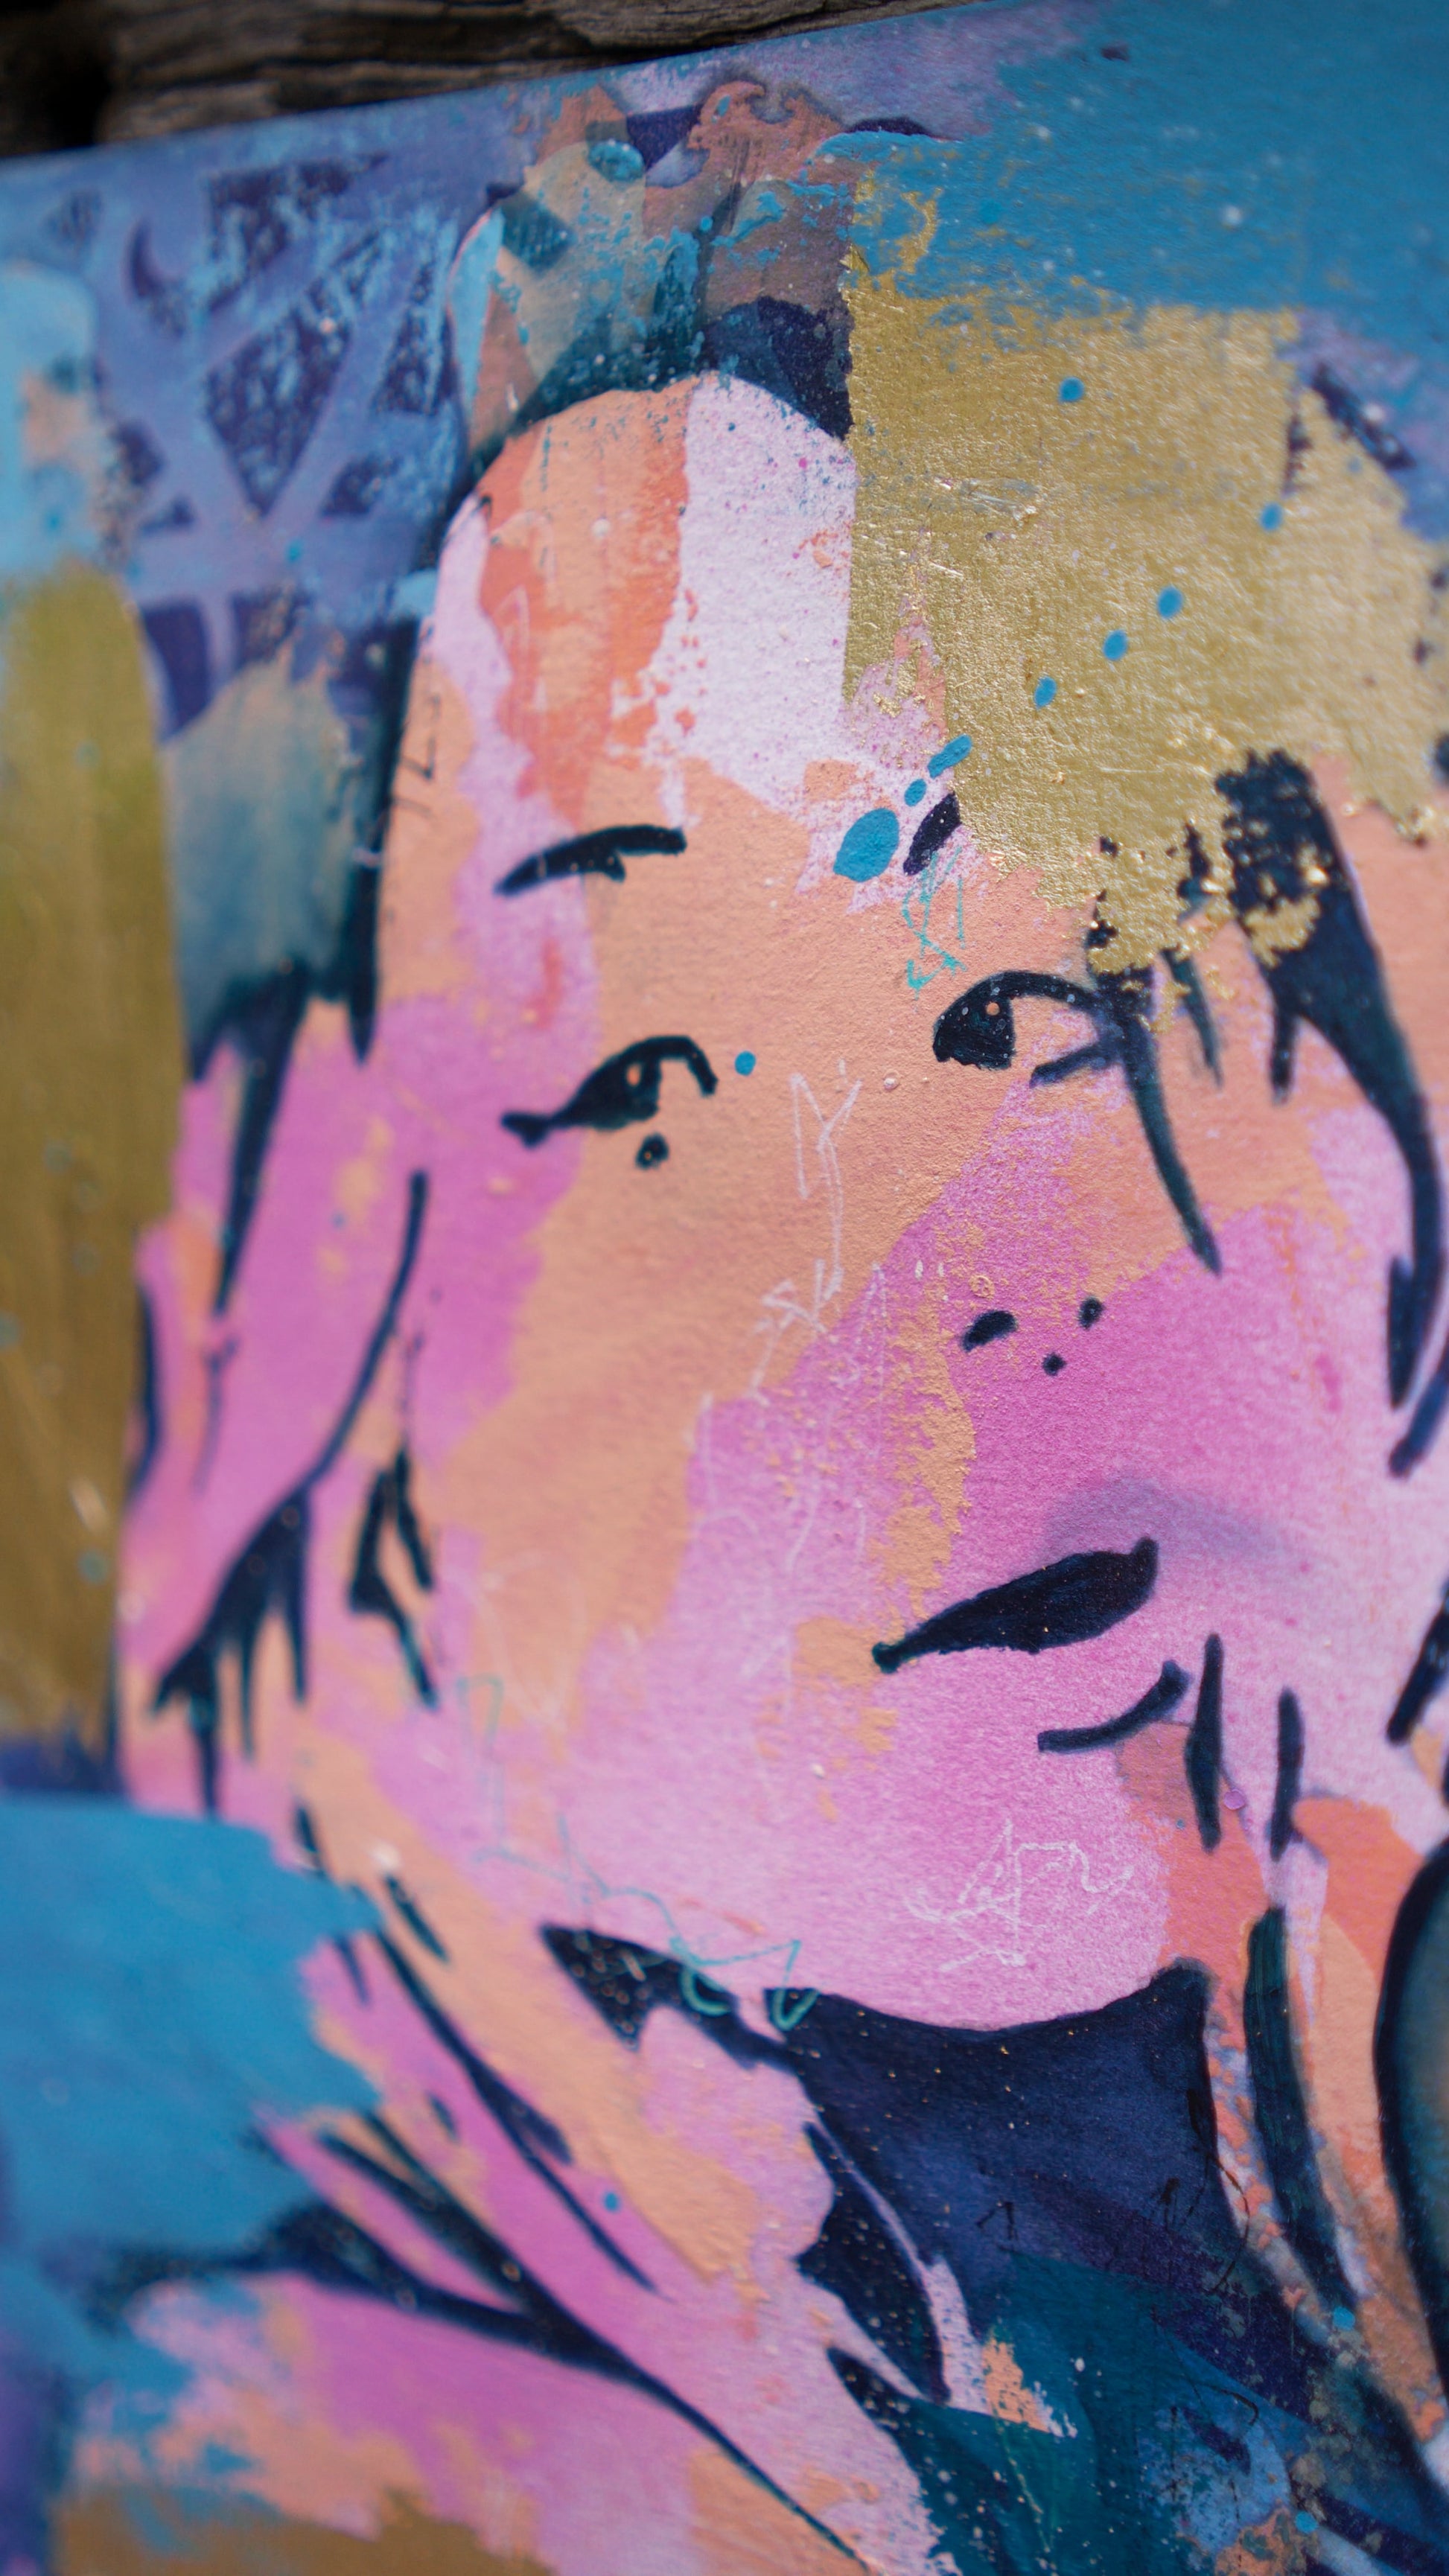 abstract art portait of a Woman on A4 Paper Blue & Gold Street Art Stencil Art melbourne wall art